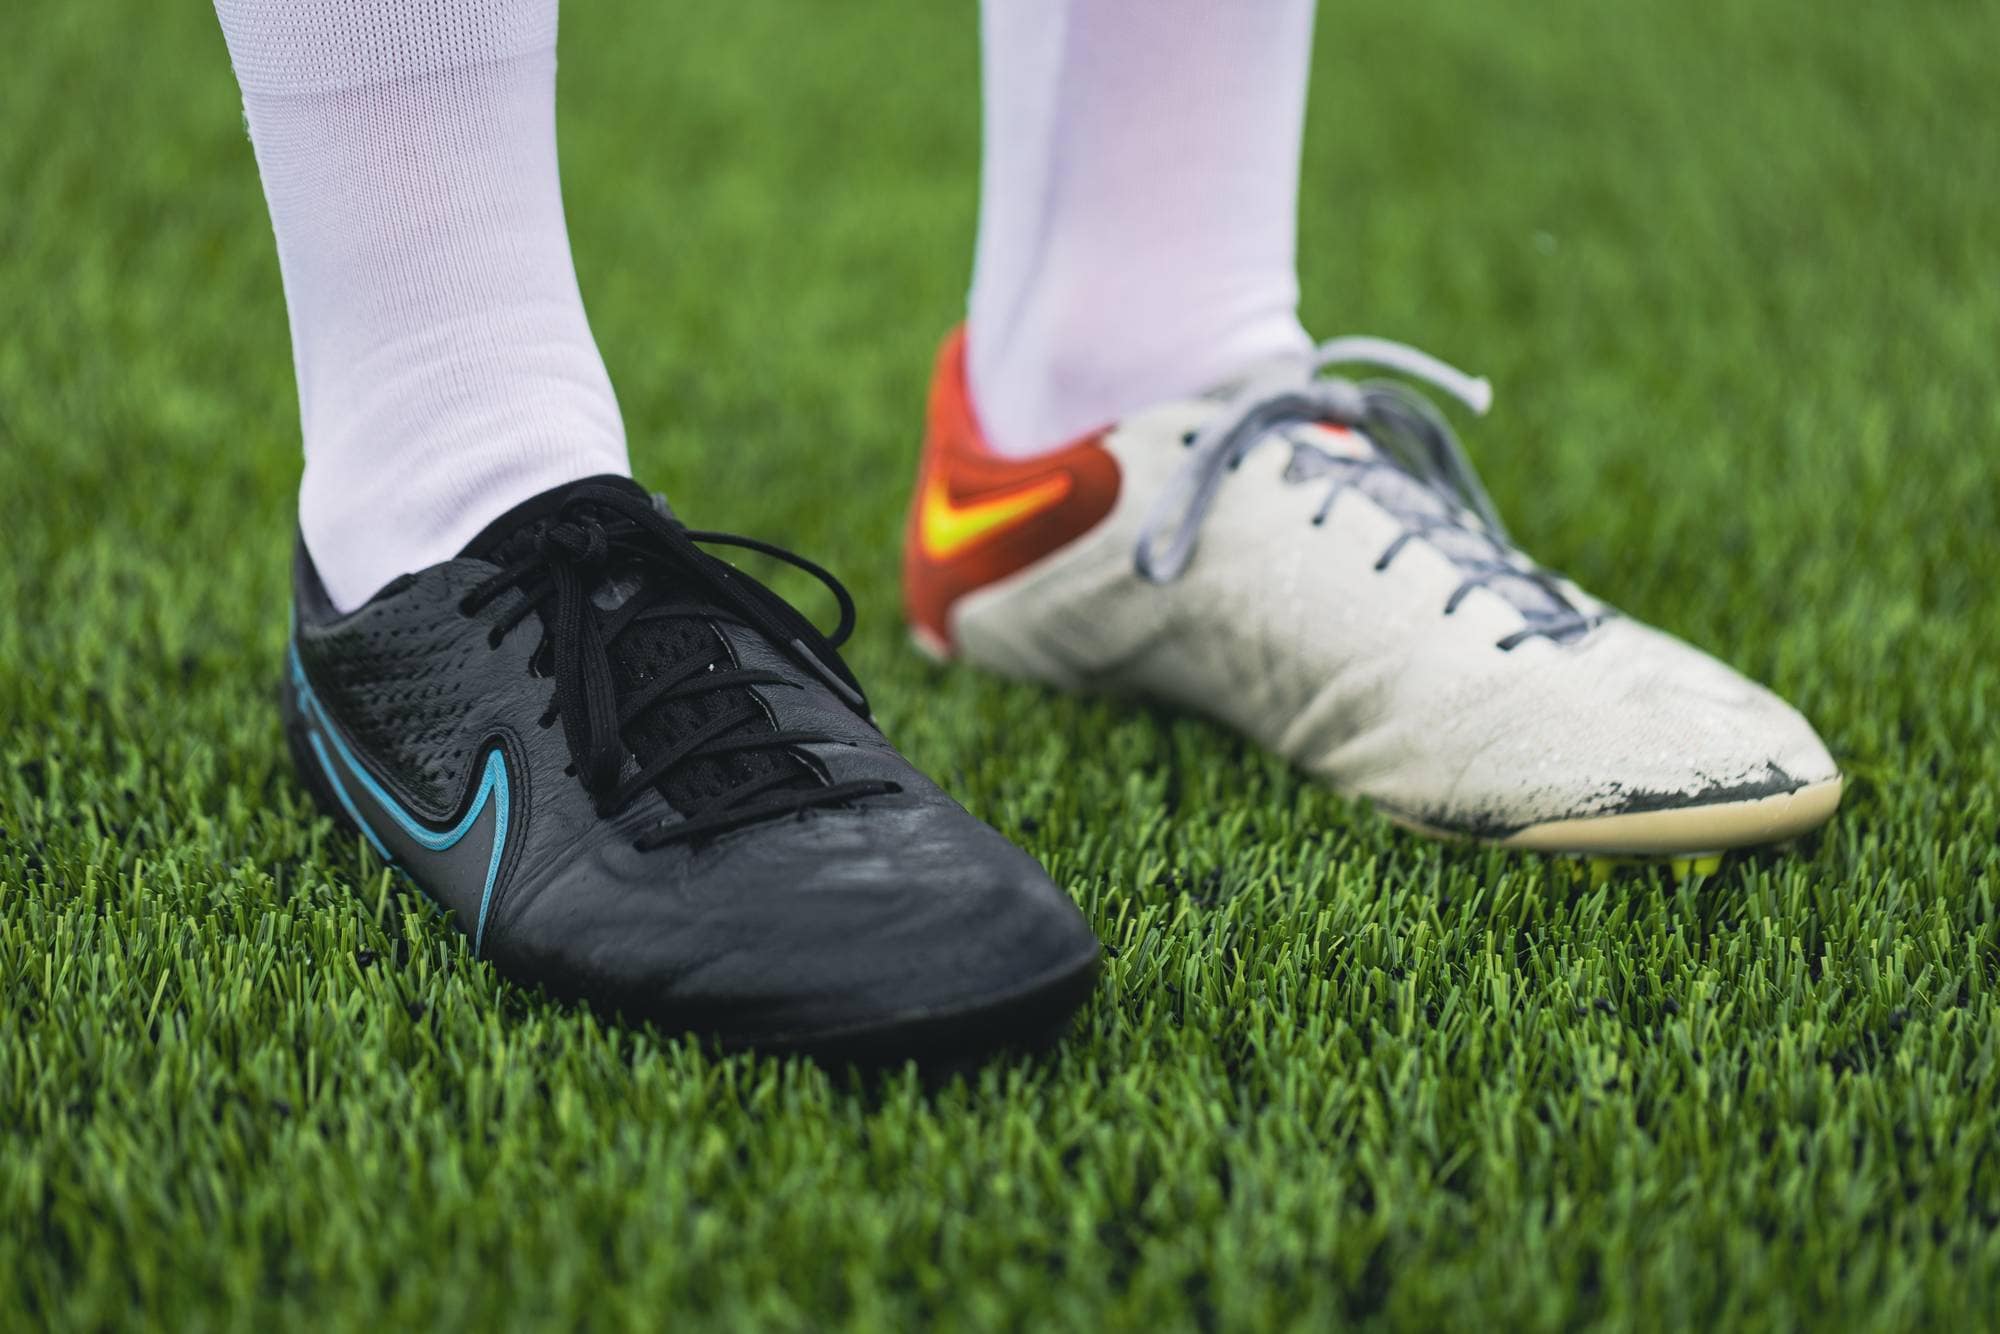 Et bilde av fotballskoene til Karina på det grønne kunstgresset. Hun har én sort og én hvit sko, men begge er av merket Nike og ser ut til å være samme modell.